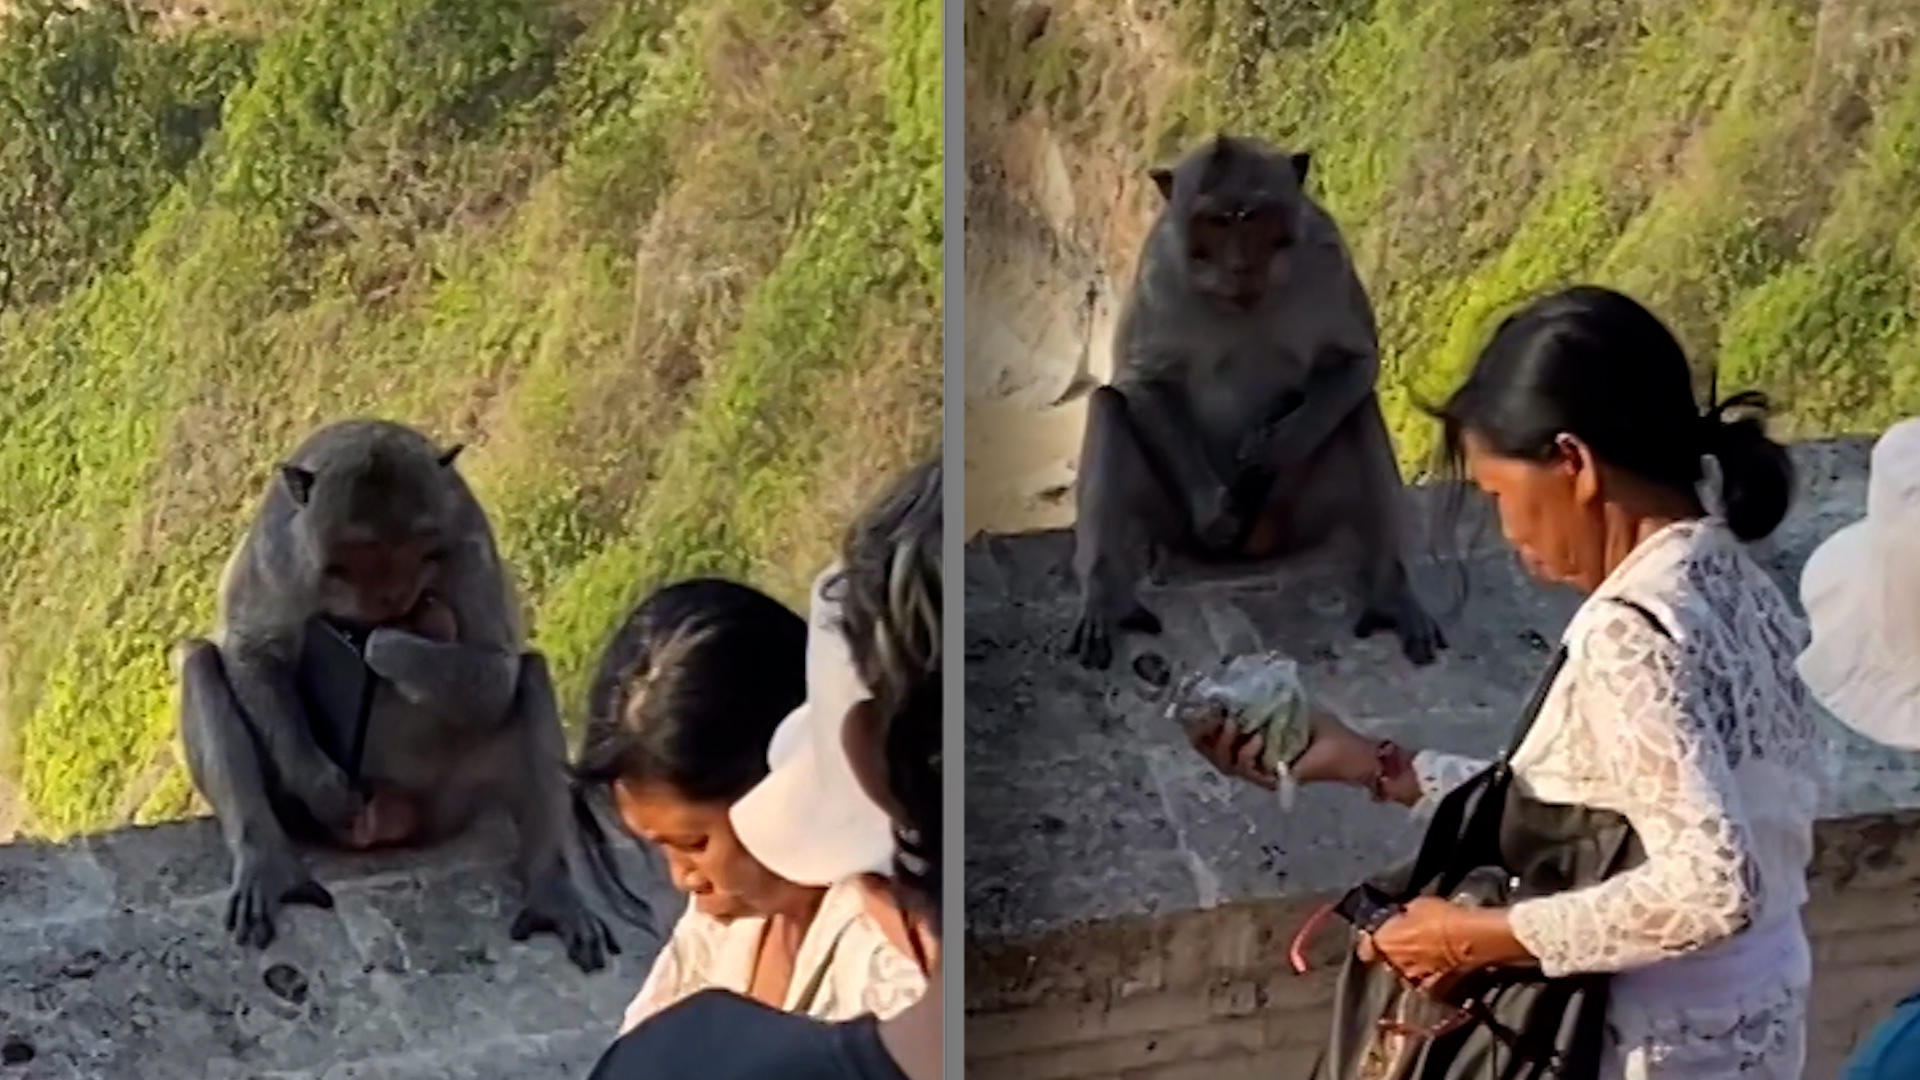 Divoká opice vydírá turistu svým mobilem.  Dostává ho pouze výměnou za jídlo